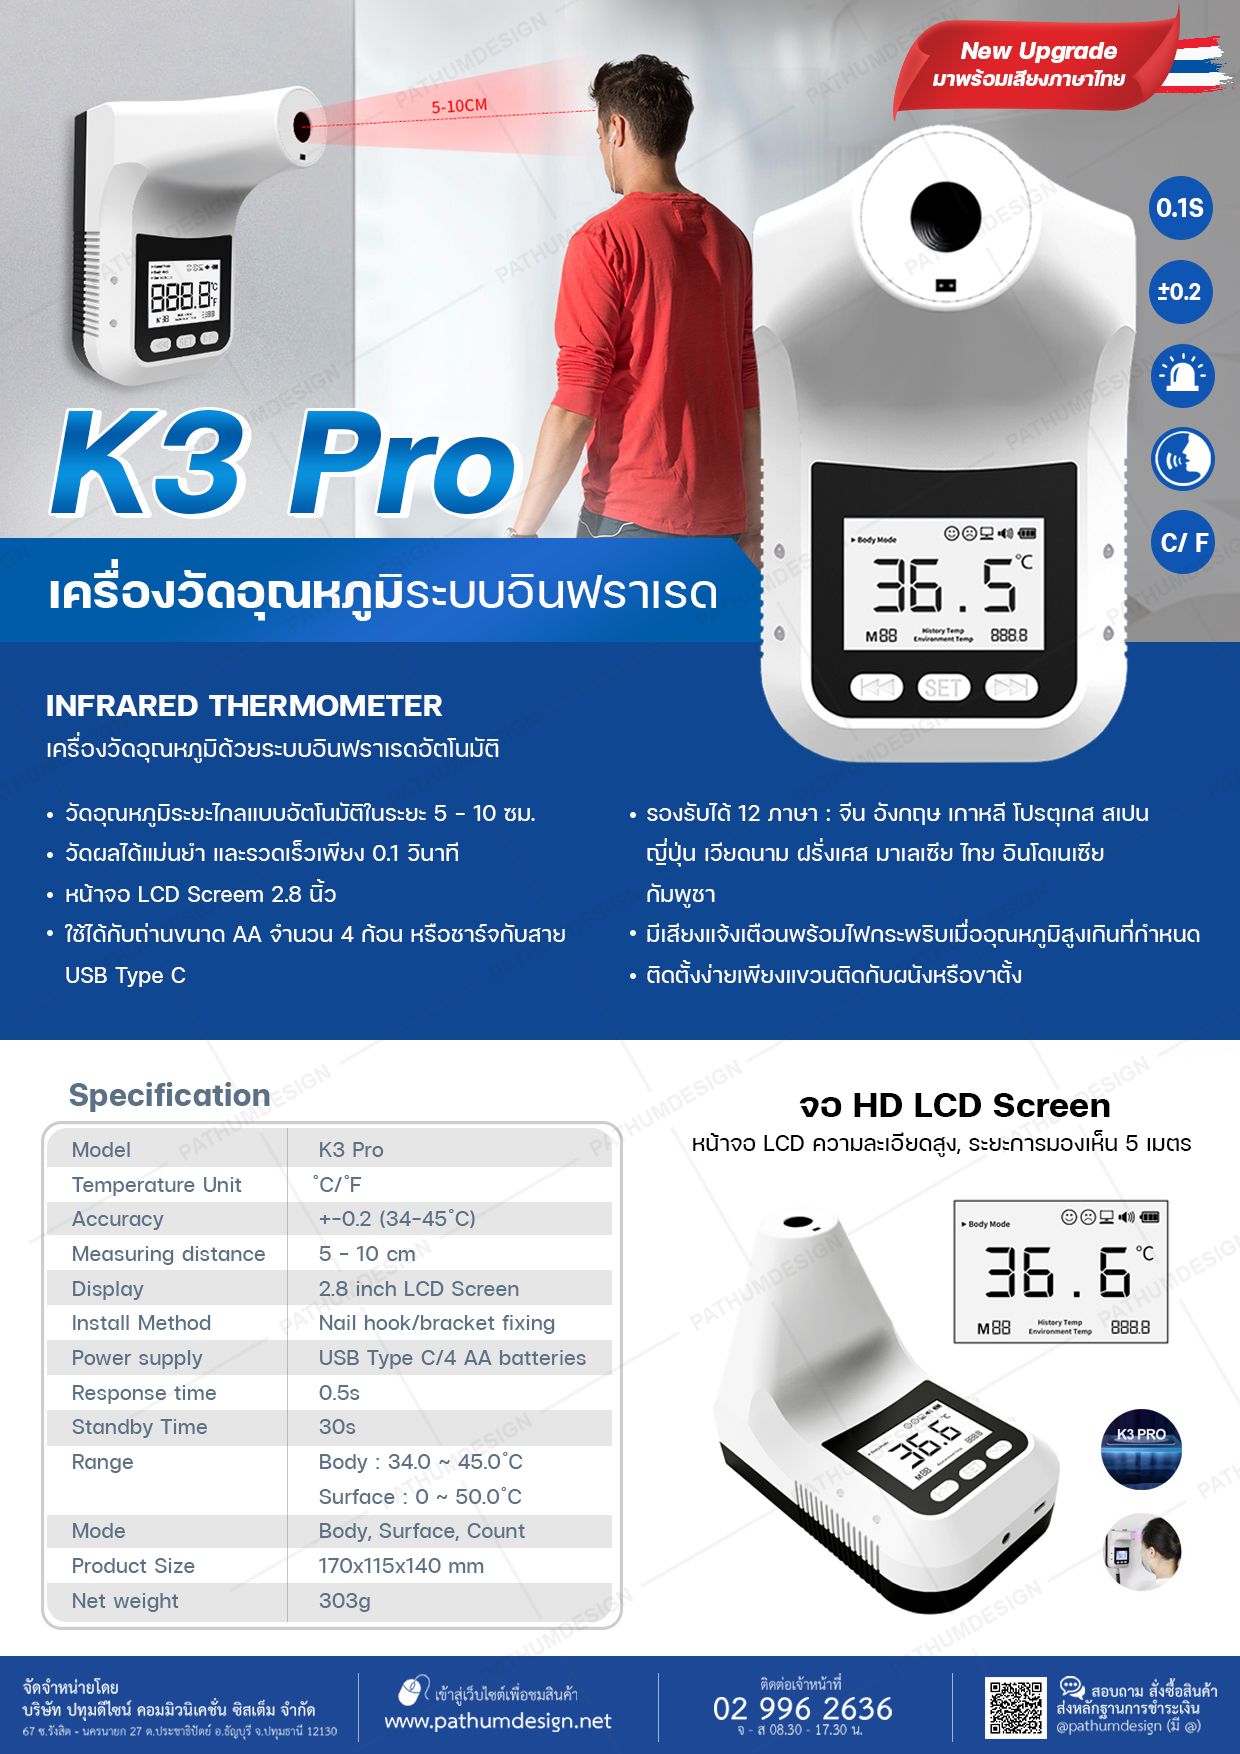 K3 Pro เครื่องวัดอุณหภูมิระบบอินฟราเรด รองรับ 12 ภาษา ใหม่! ตัวเครื่งอมาพร้อมกับเสียงภาษาไทย